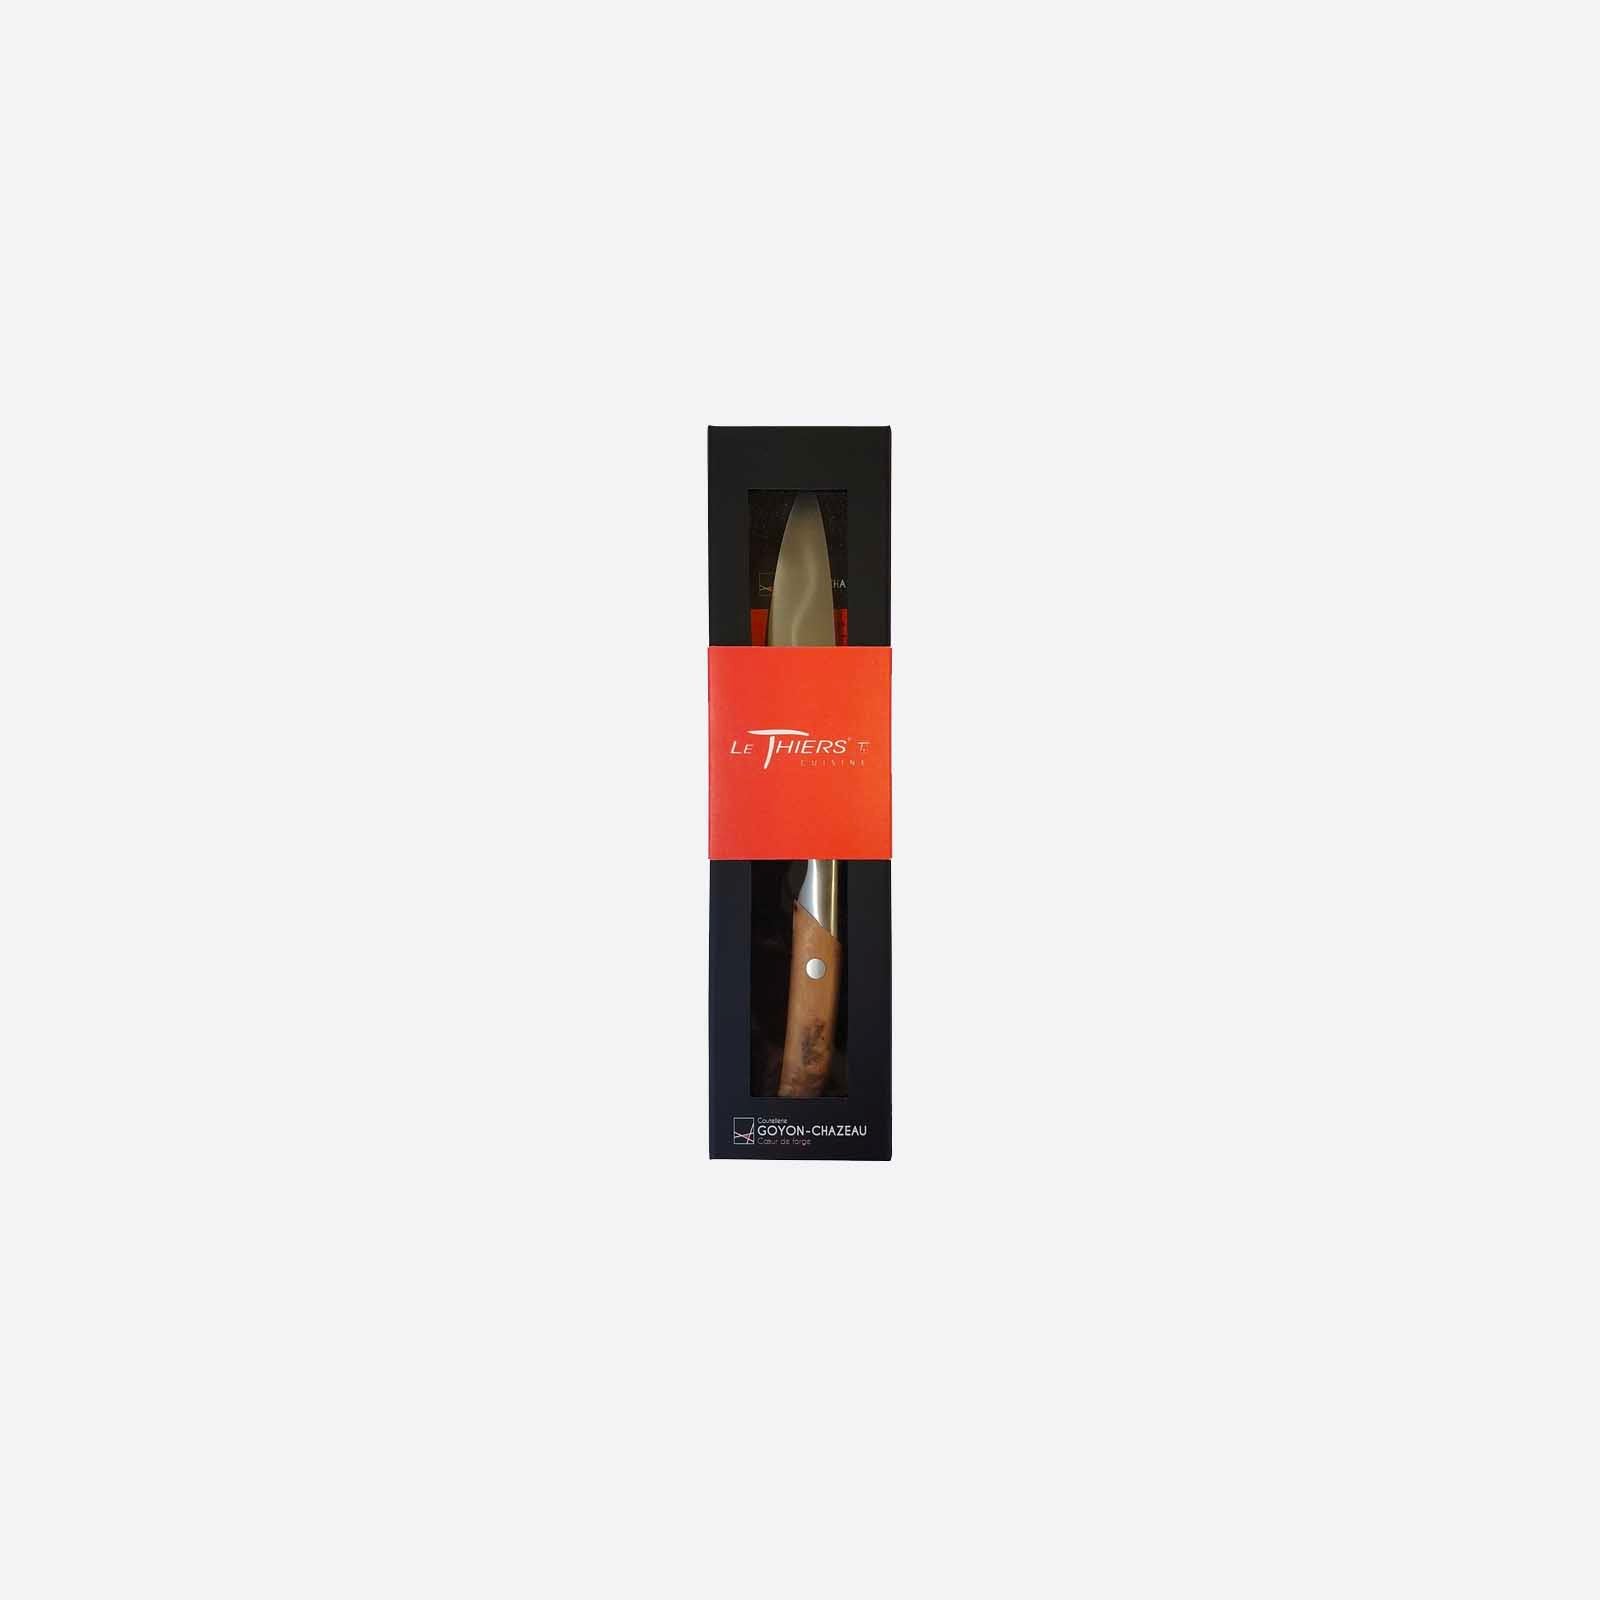 10'' kitchen knife packaging packshot